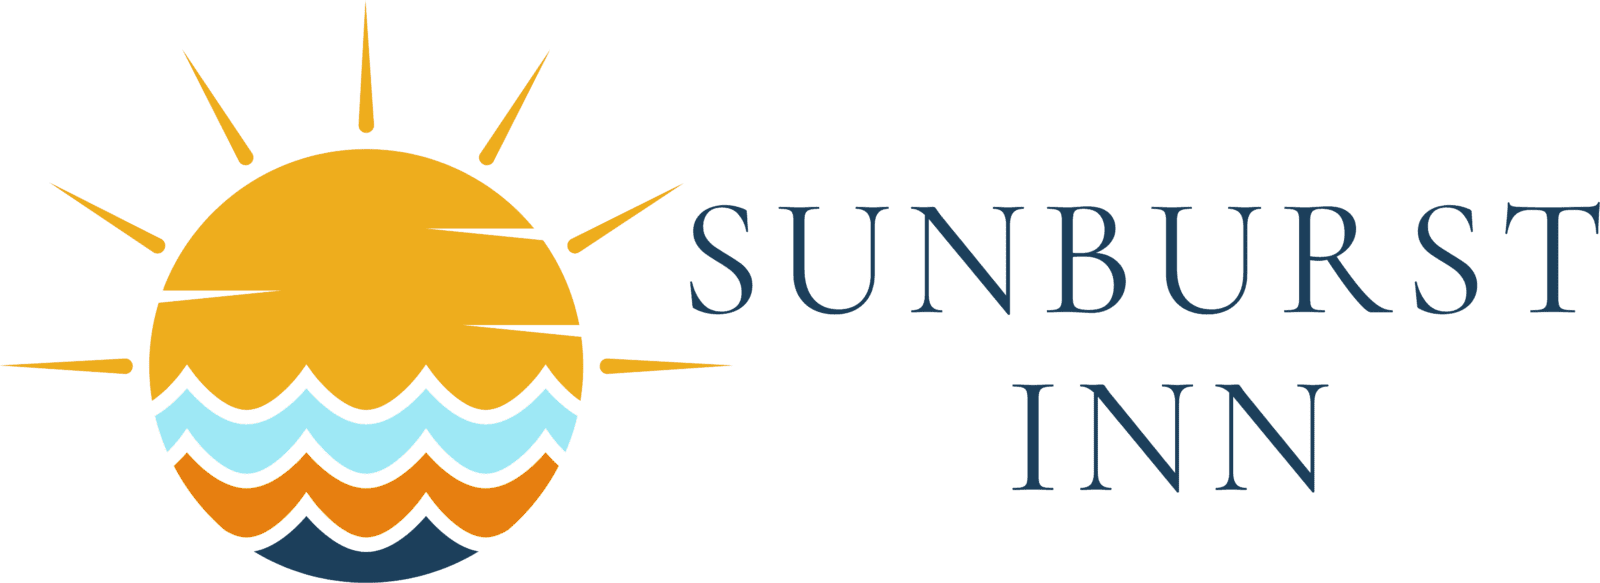 Sunburst Inn